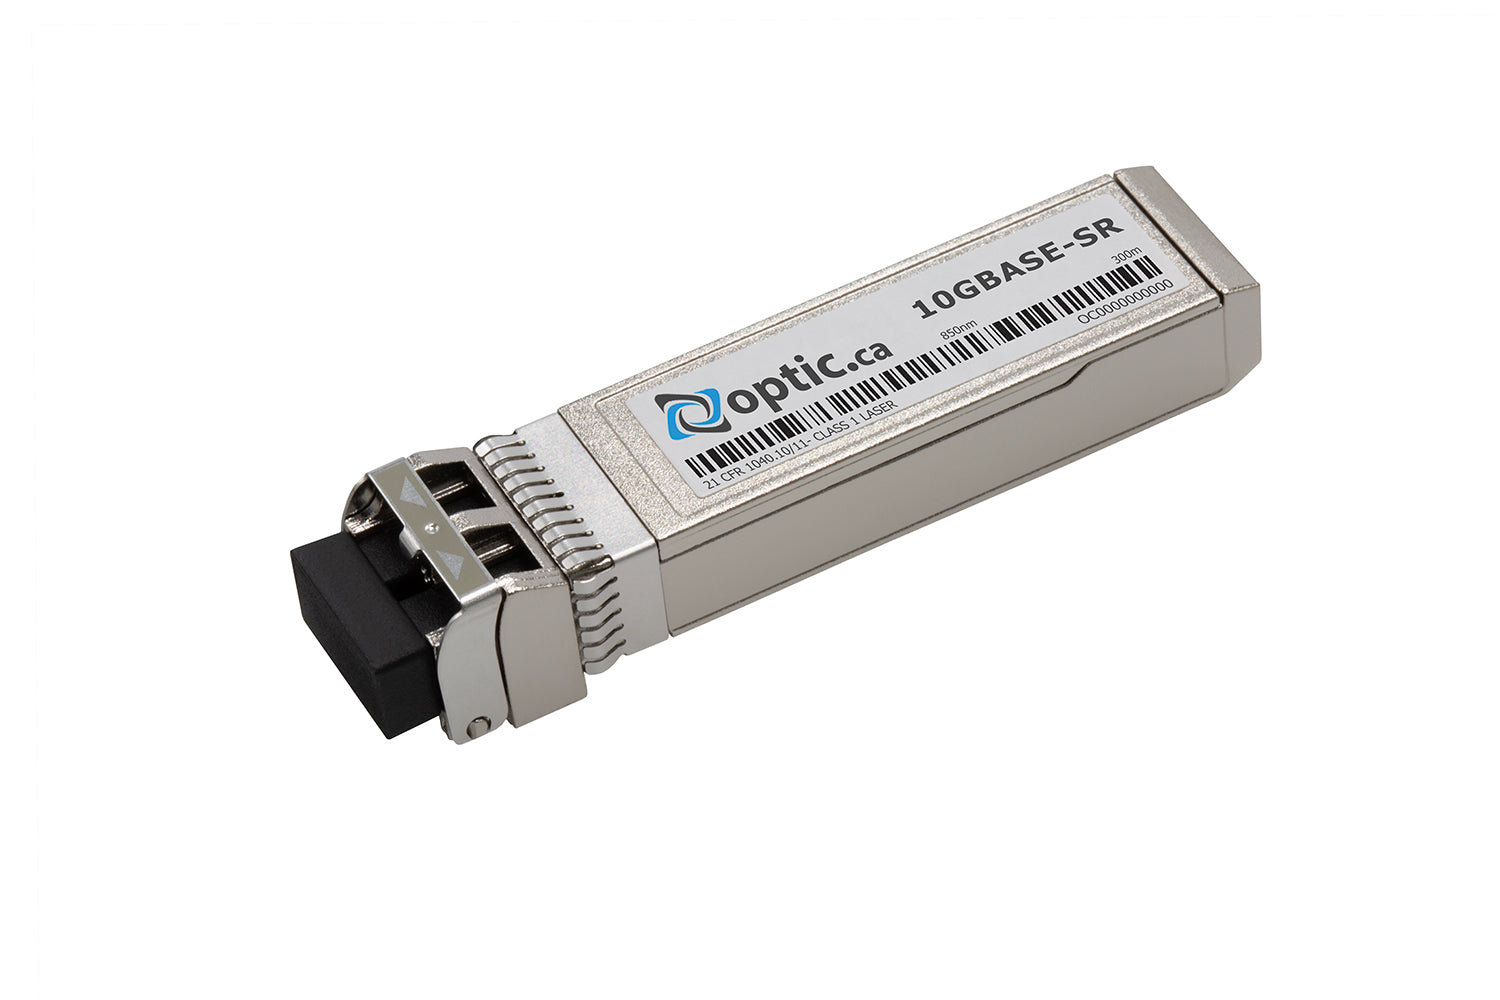 OPTIC.CA - 10GBASE-SR SFP+ - 330-8721-OC - DELL COMPATIBLE